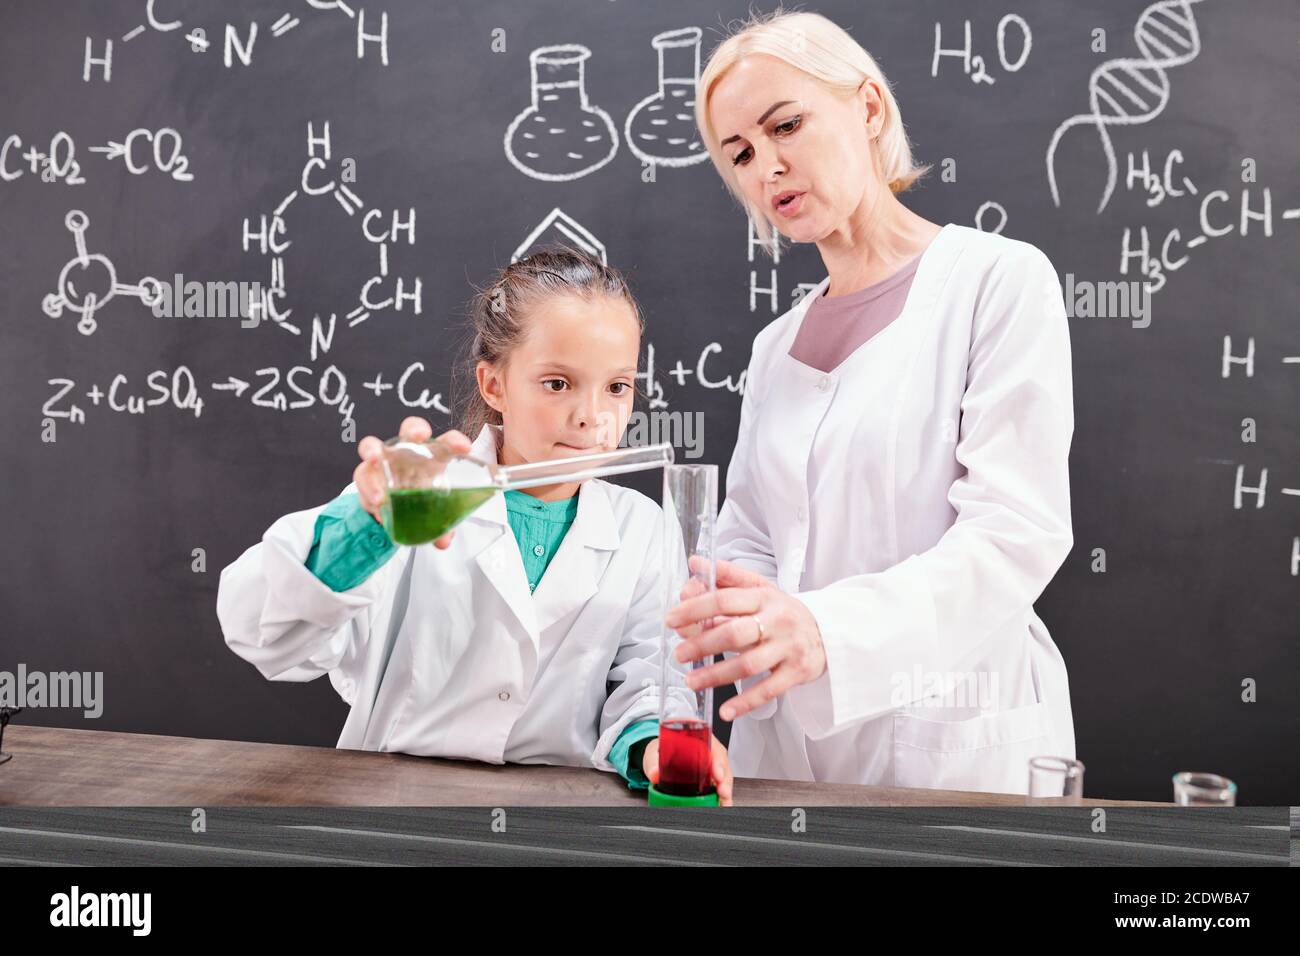 Blonde confiant professeur de chimie regardant l'école en blancoat Banque D'Images